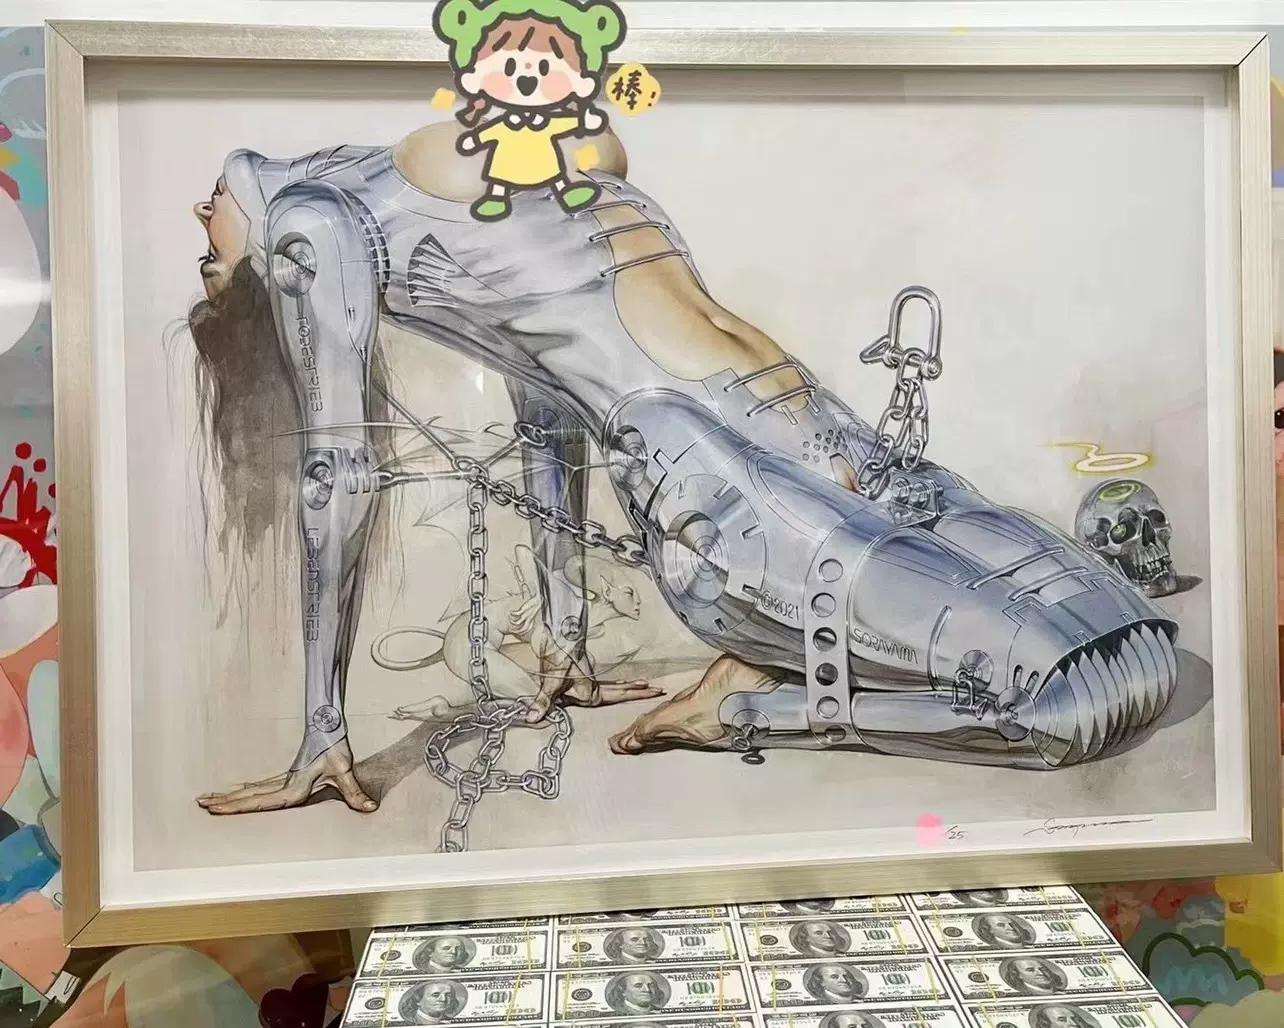 空山基版画Sorayama x H.R.GIGER 2020空山基版画超大尺寸-Taobao